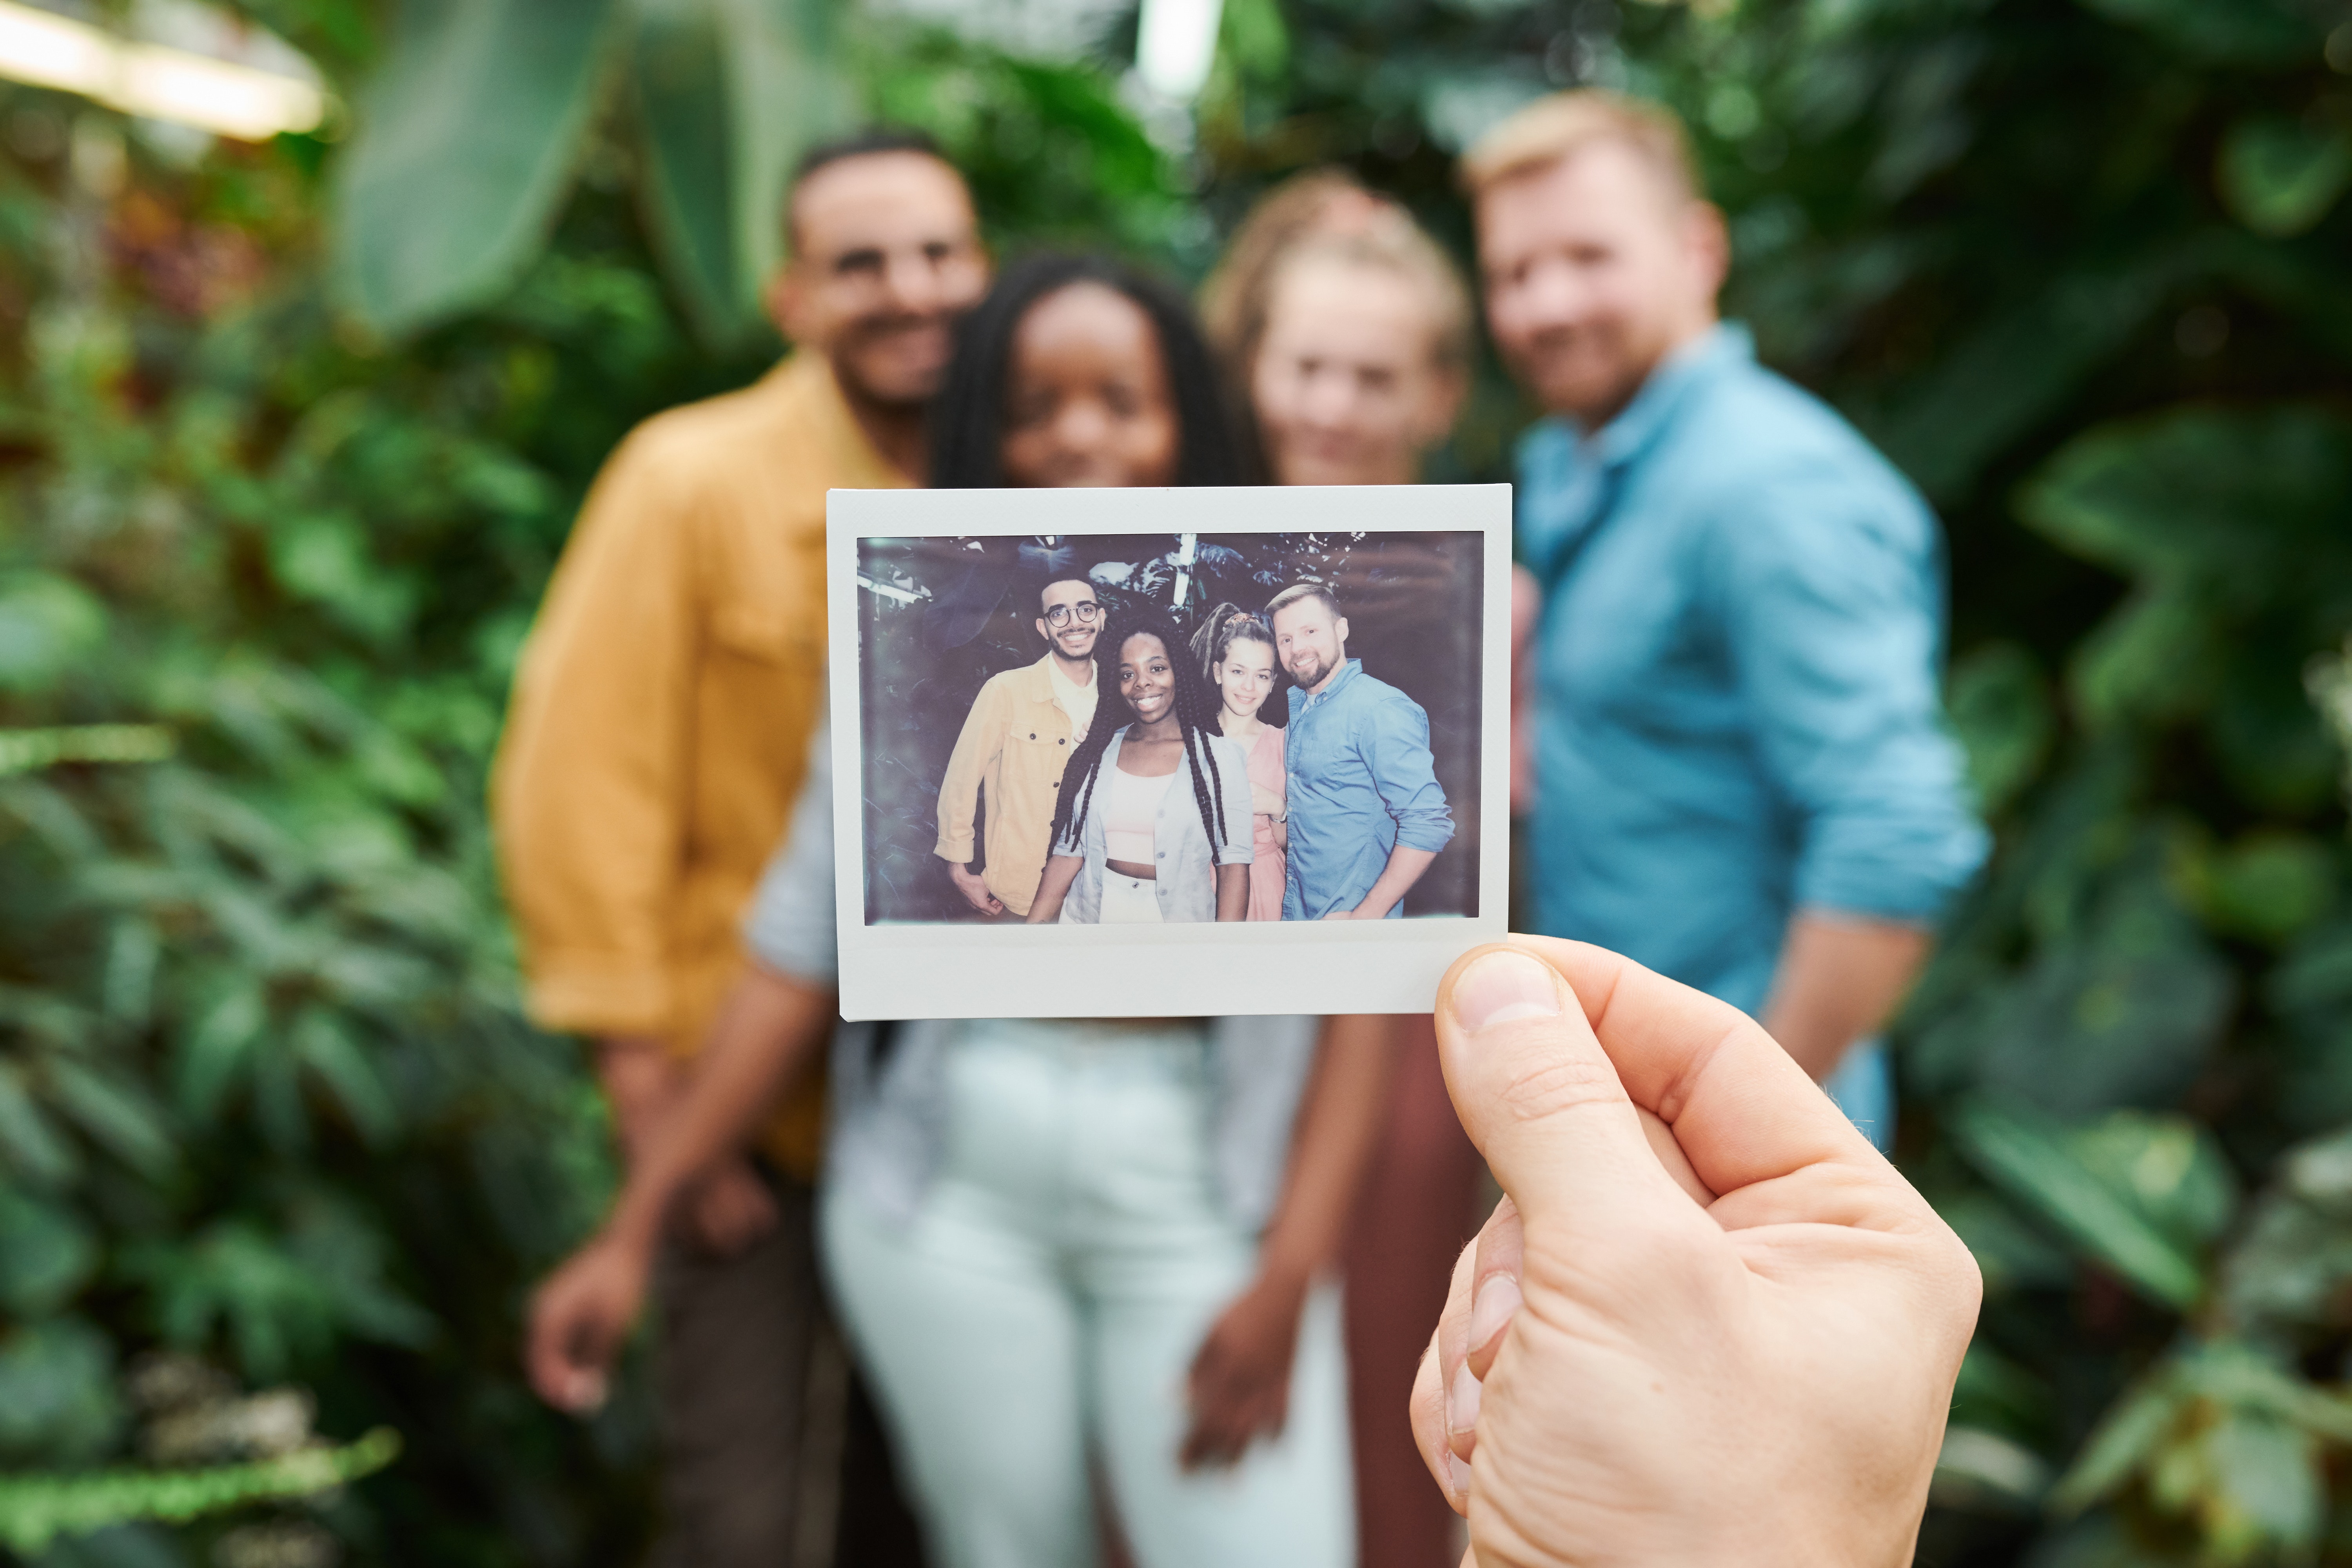 Groepsfoto polaroid met in de achtergrond de 4 mensen van op de foto